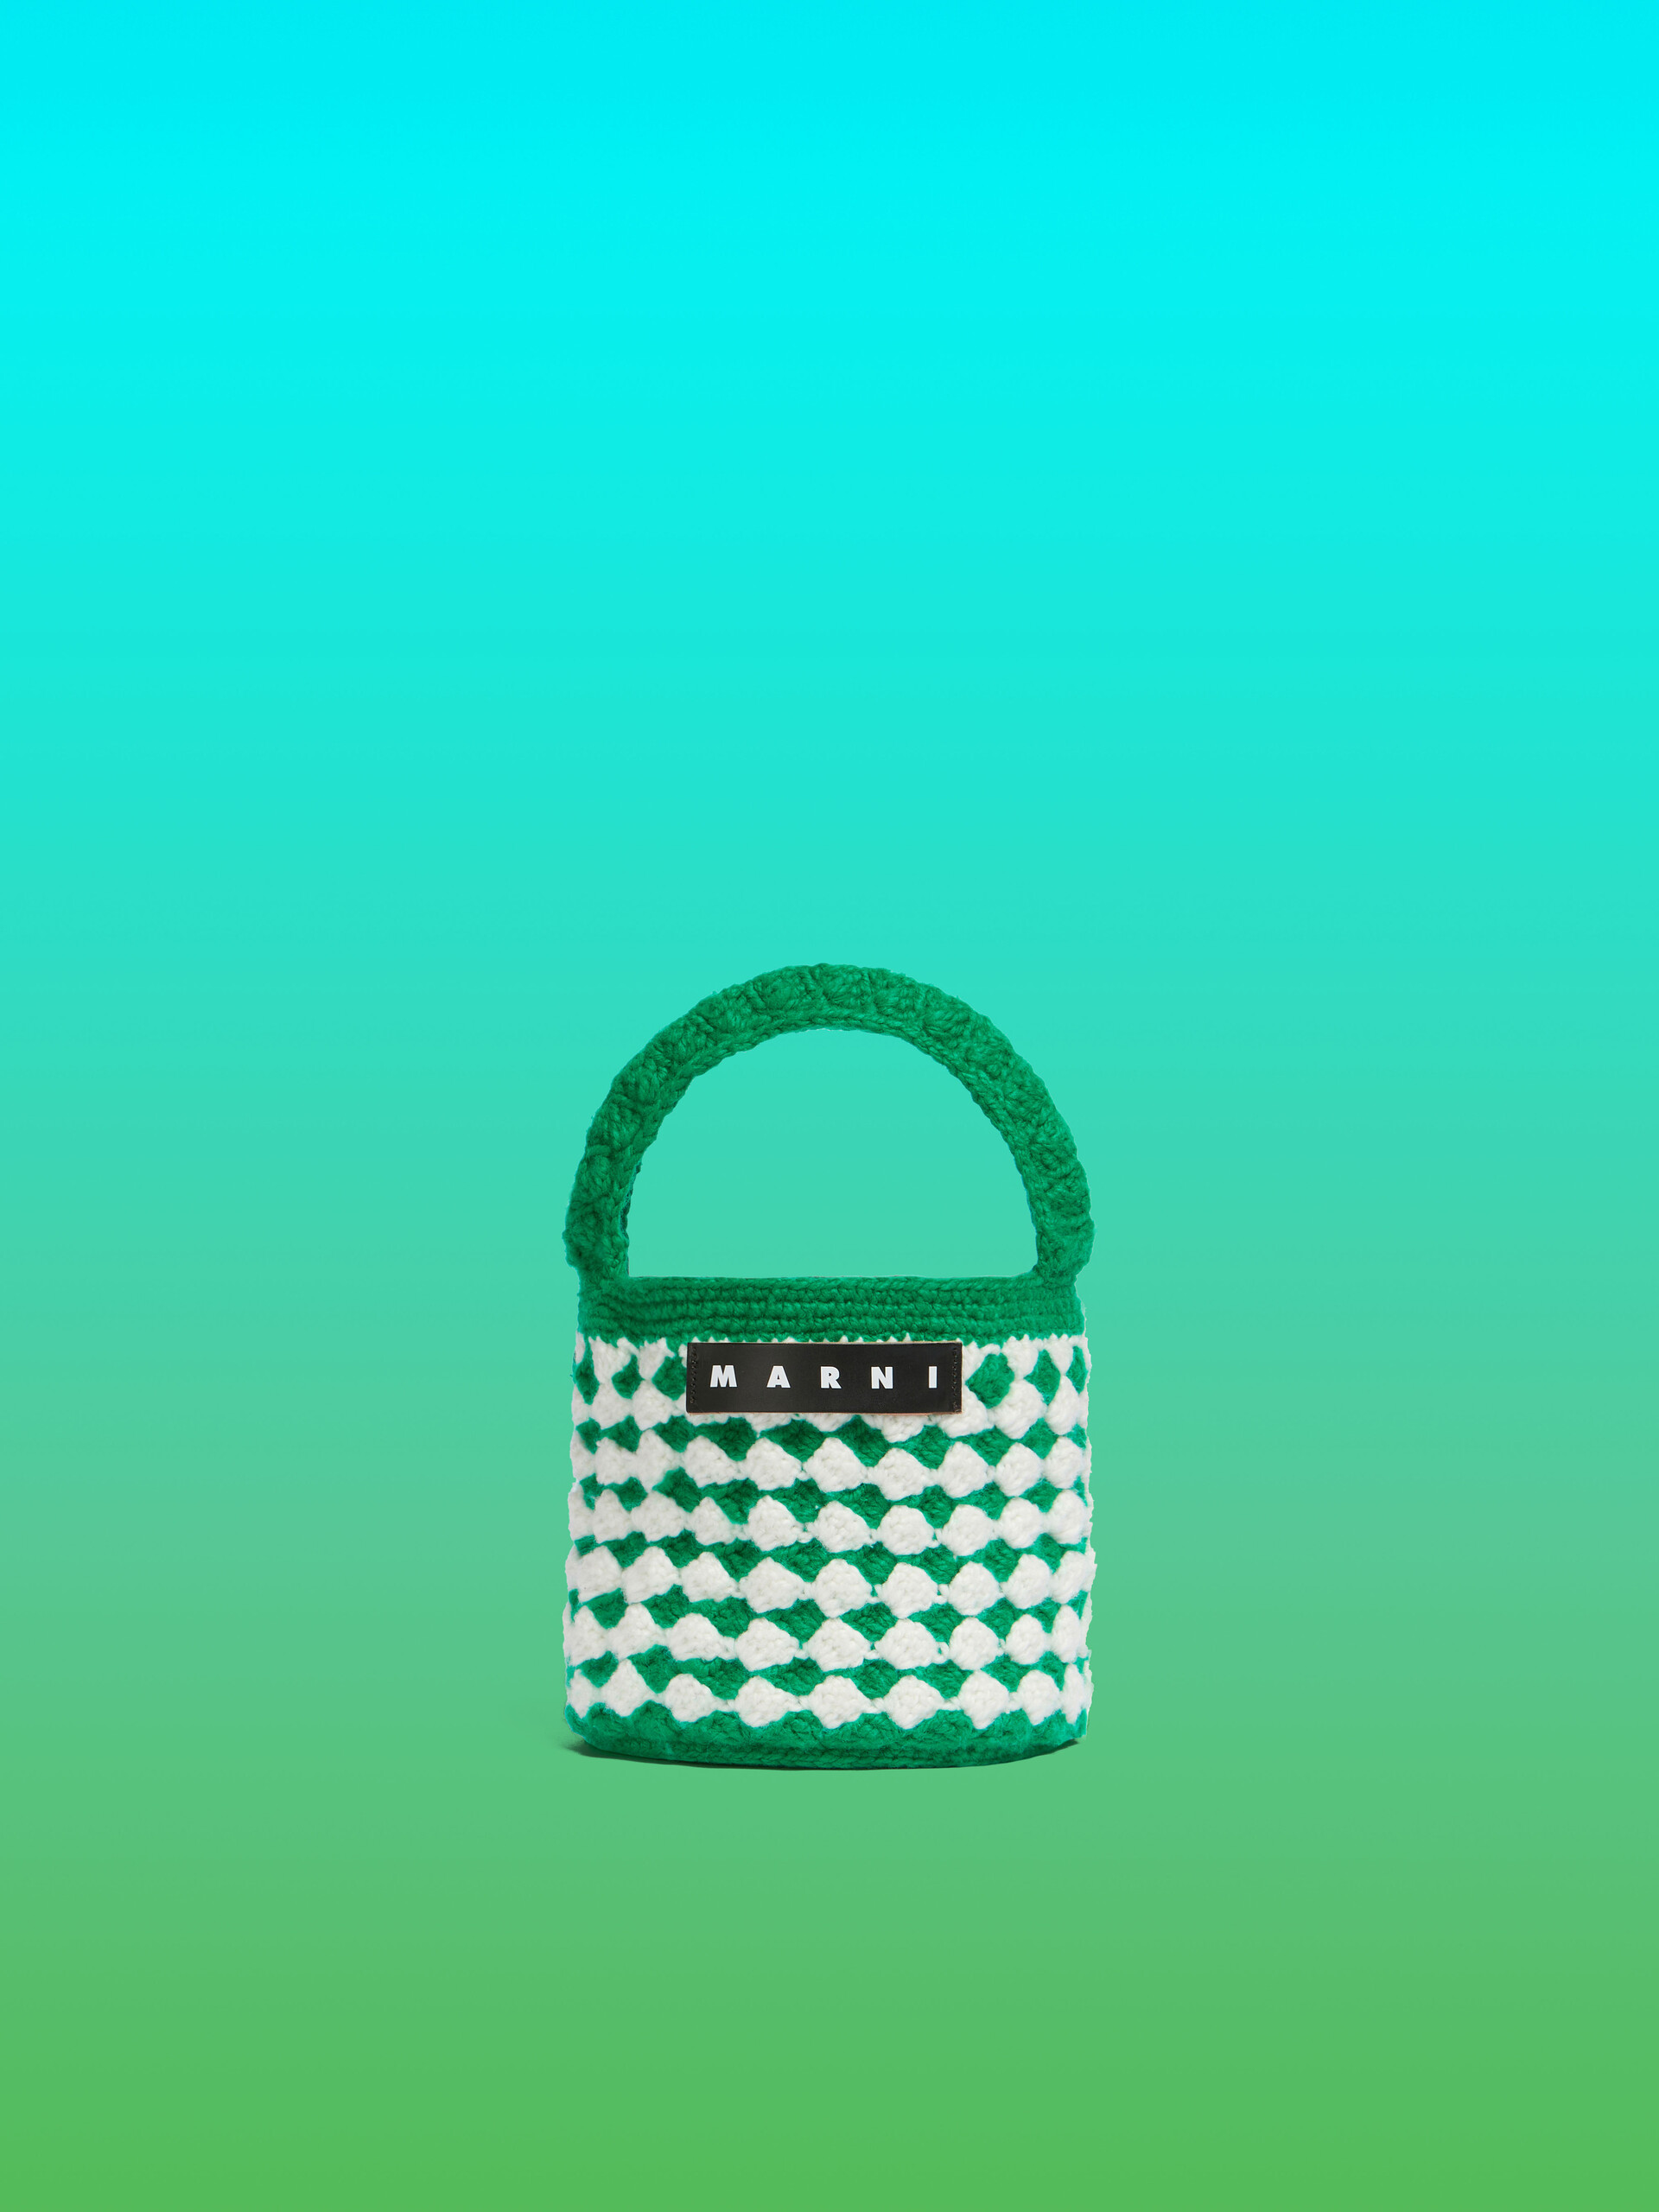 Purple Crochet Marni Market Rosal Bag - Shopping Bags - Image 1